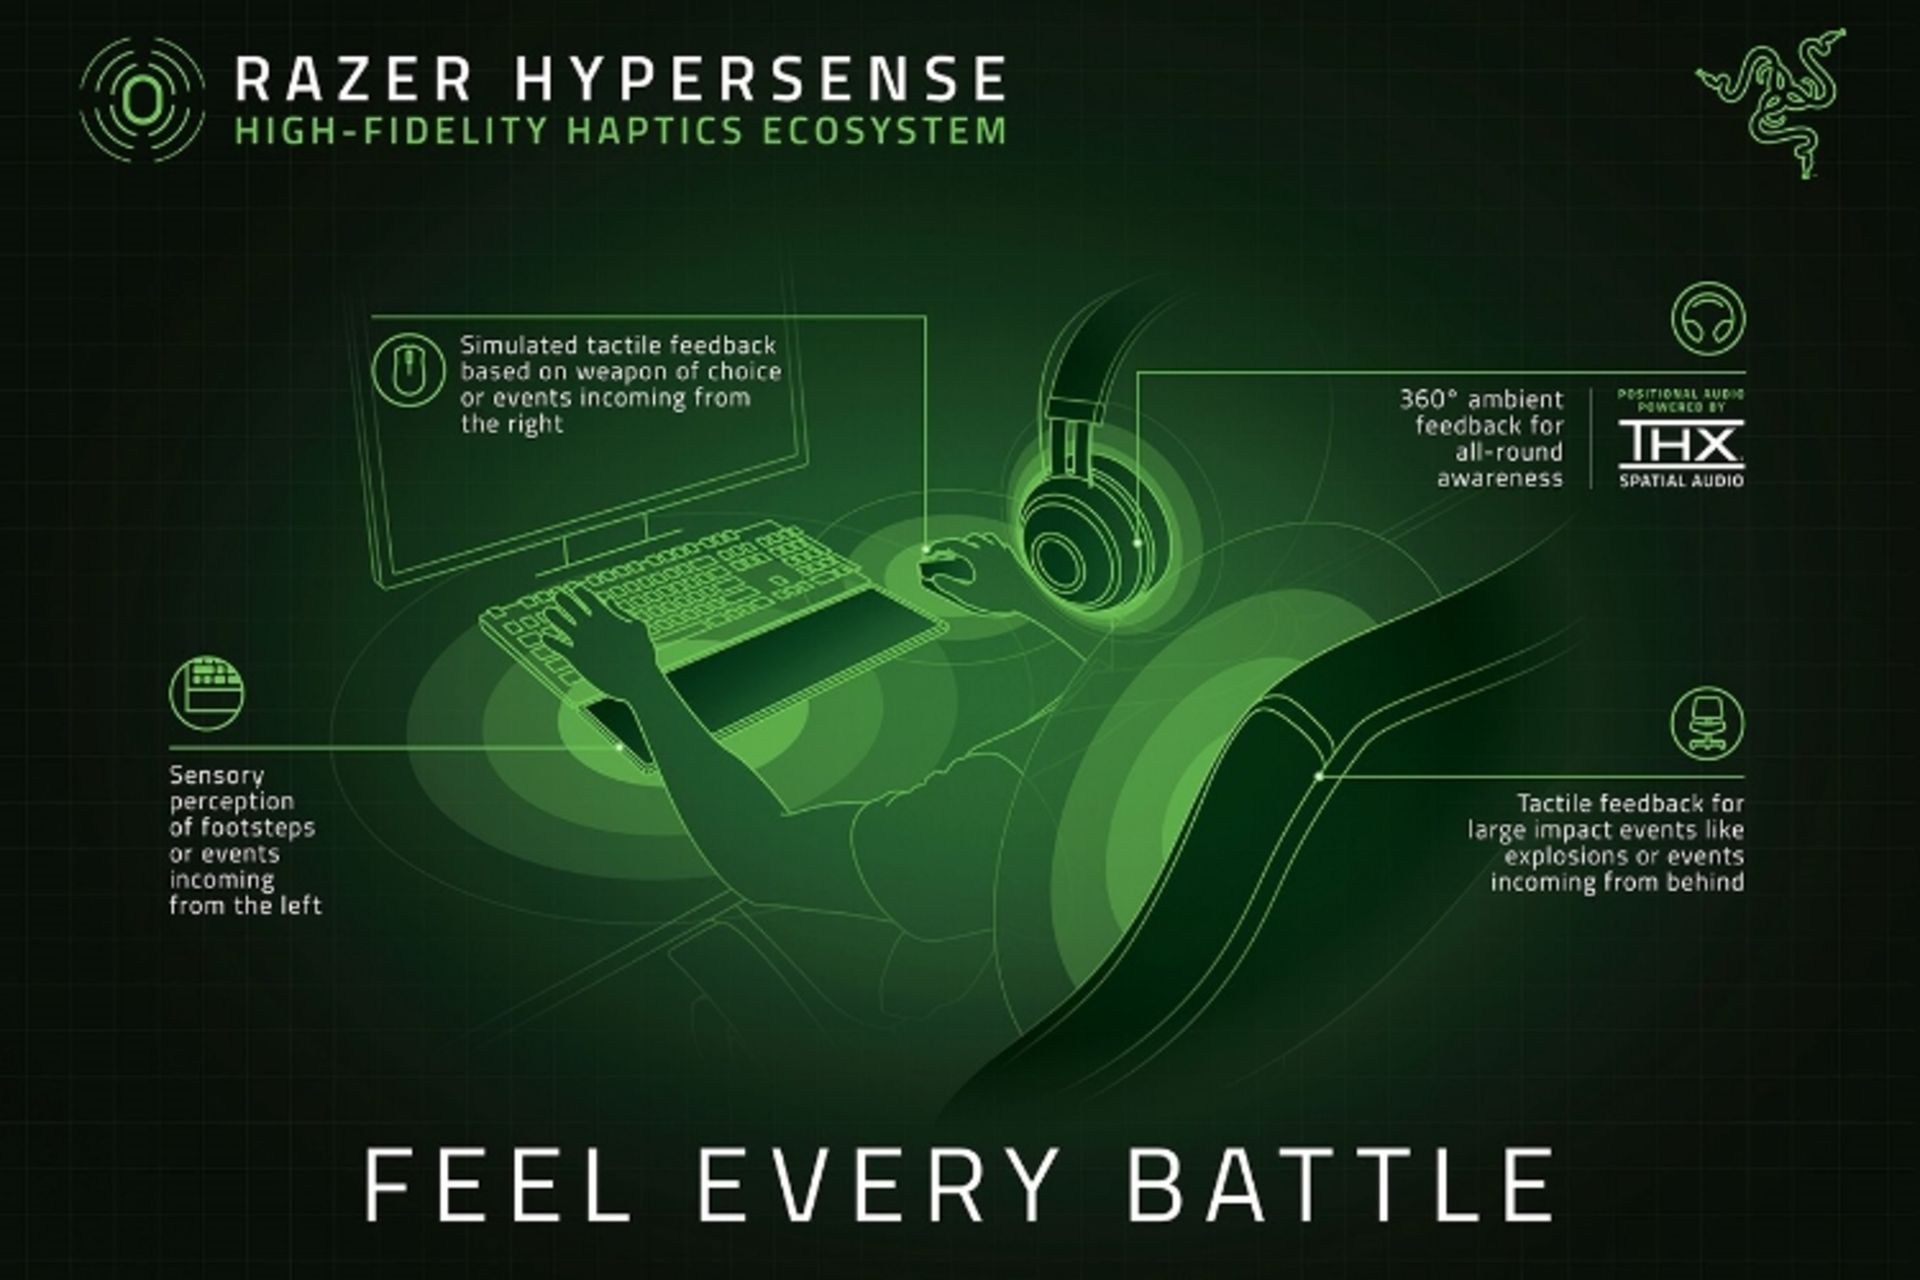 مرجع متخصصين ايران هايپرسنس ريزر / Razer Hypersense